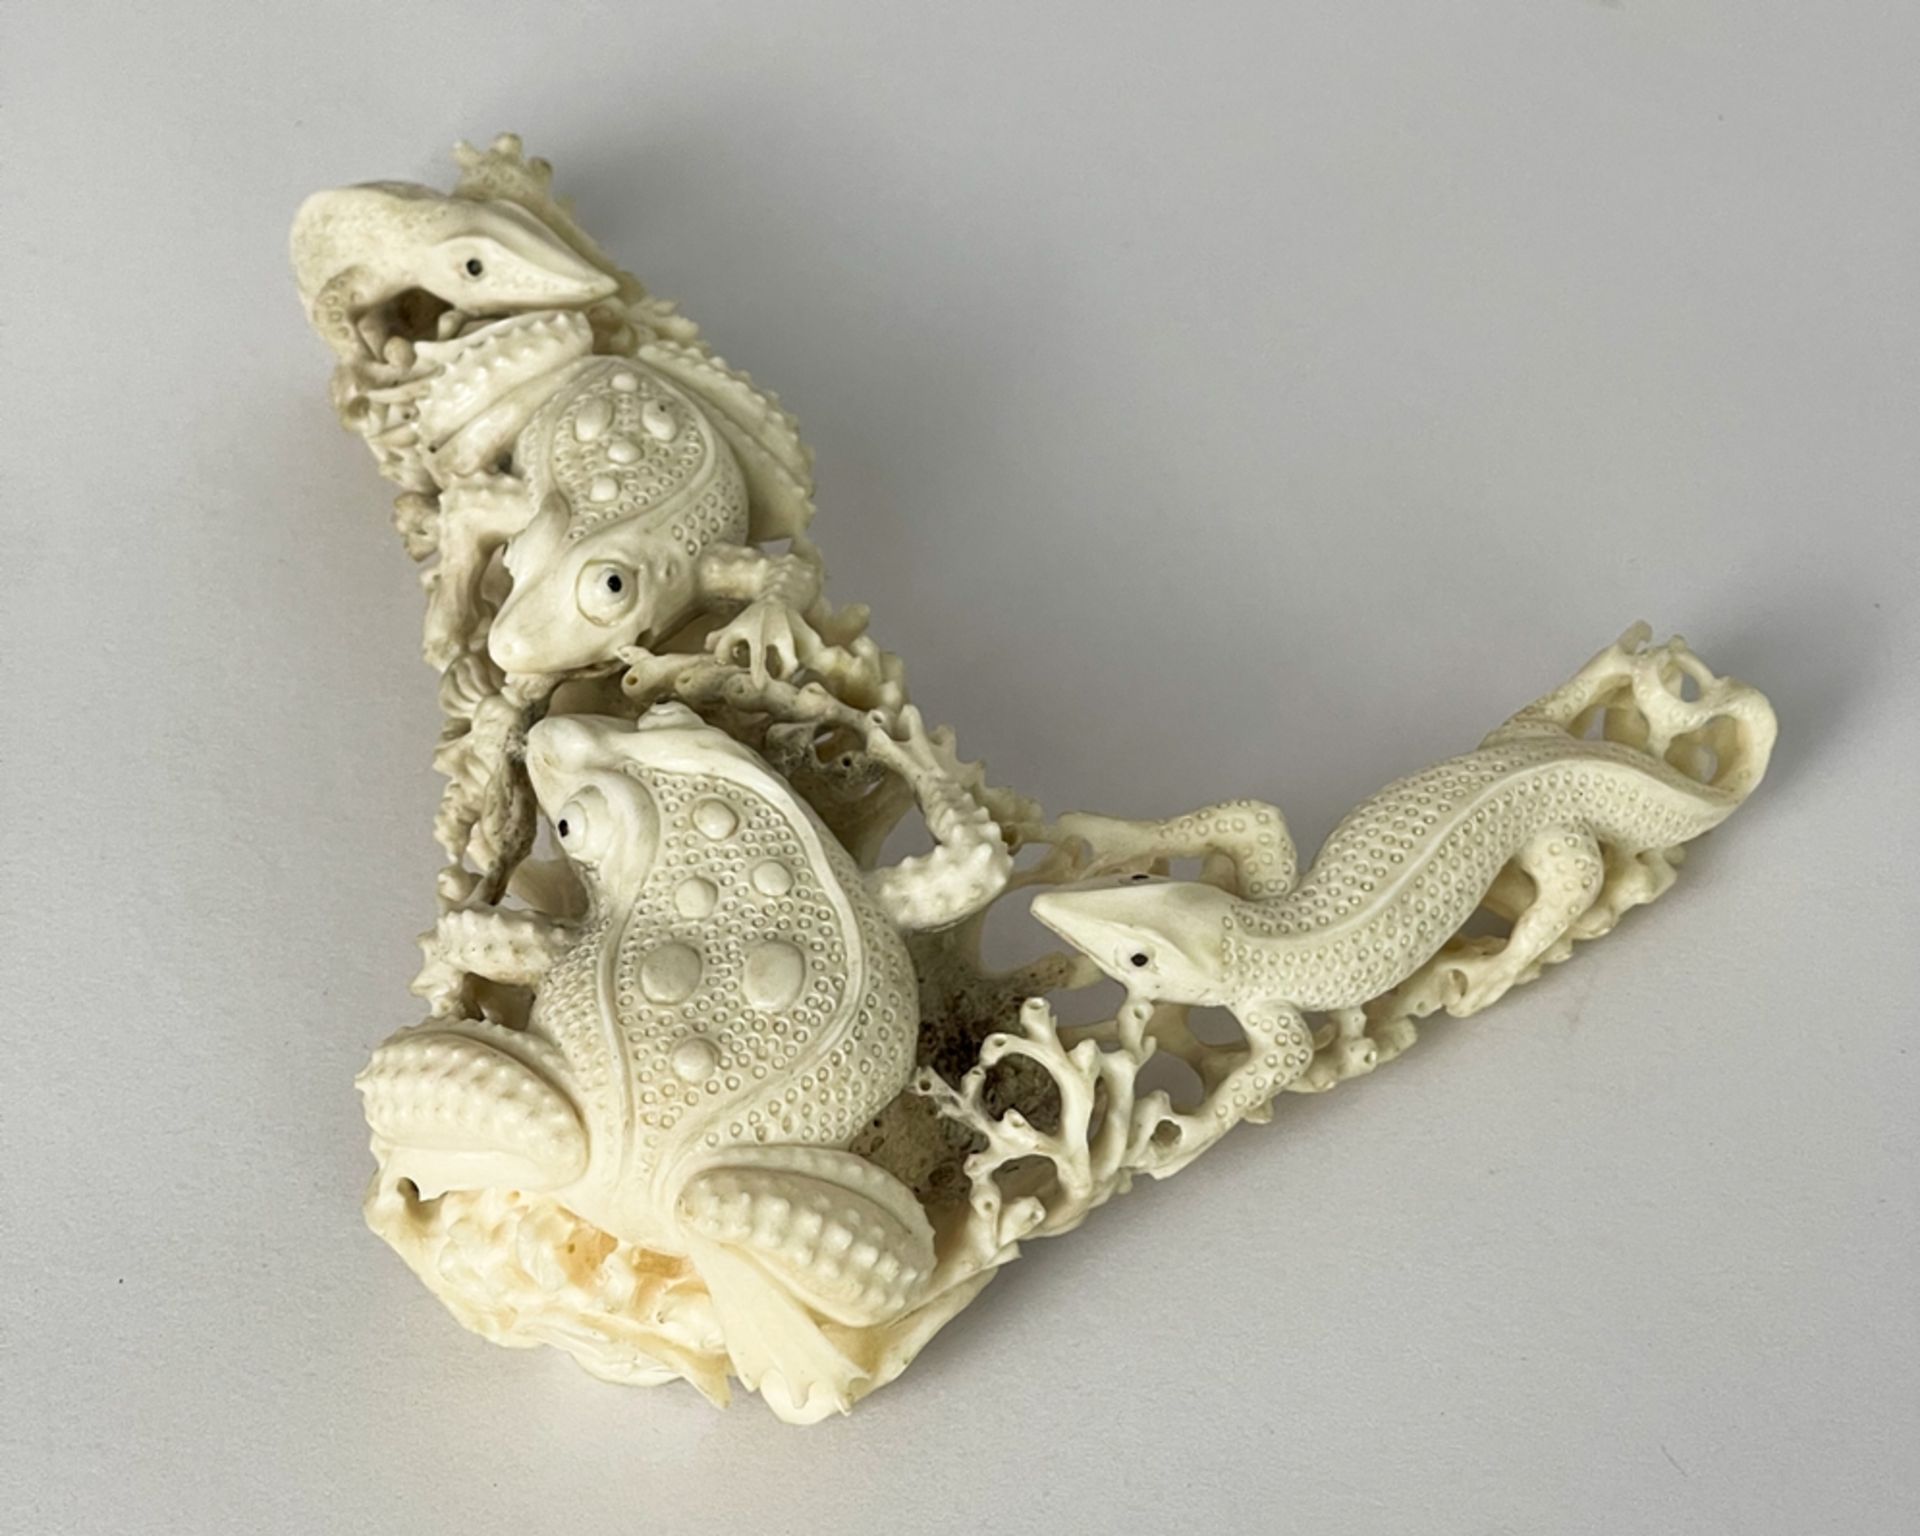 Geschnitzte Skulptur aus Bein mit Kröten / Frösche und Salamander - Bild 2 aus 8